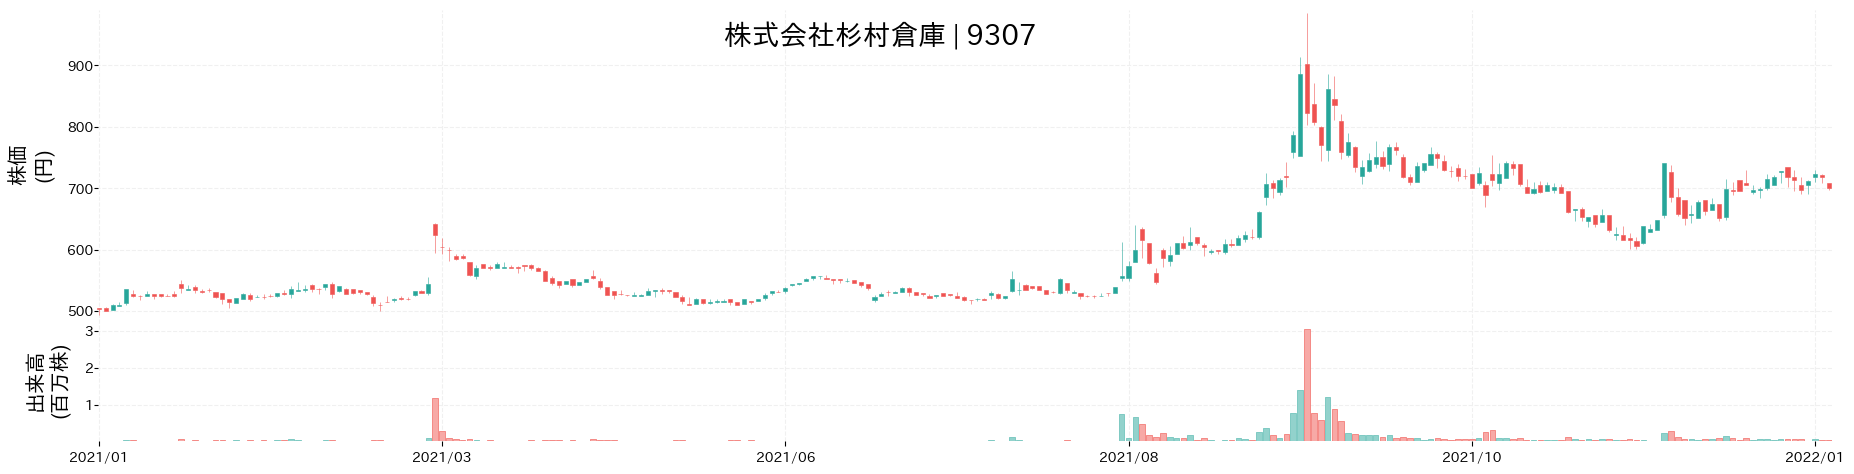 杉村倉庫の株価推移(2021)